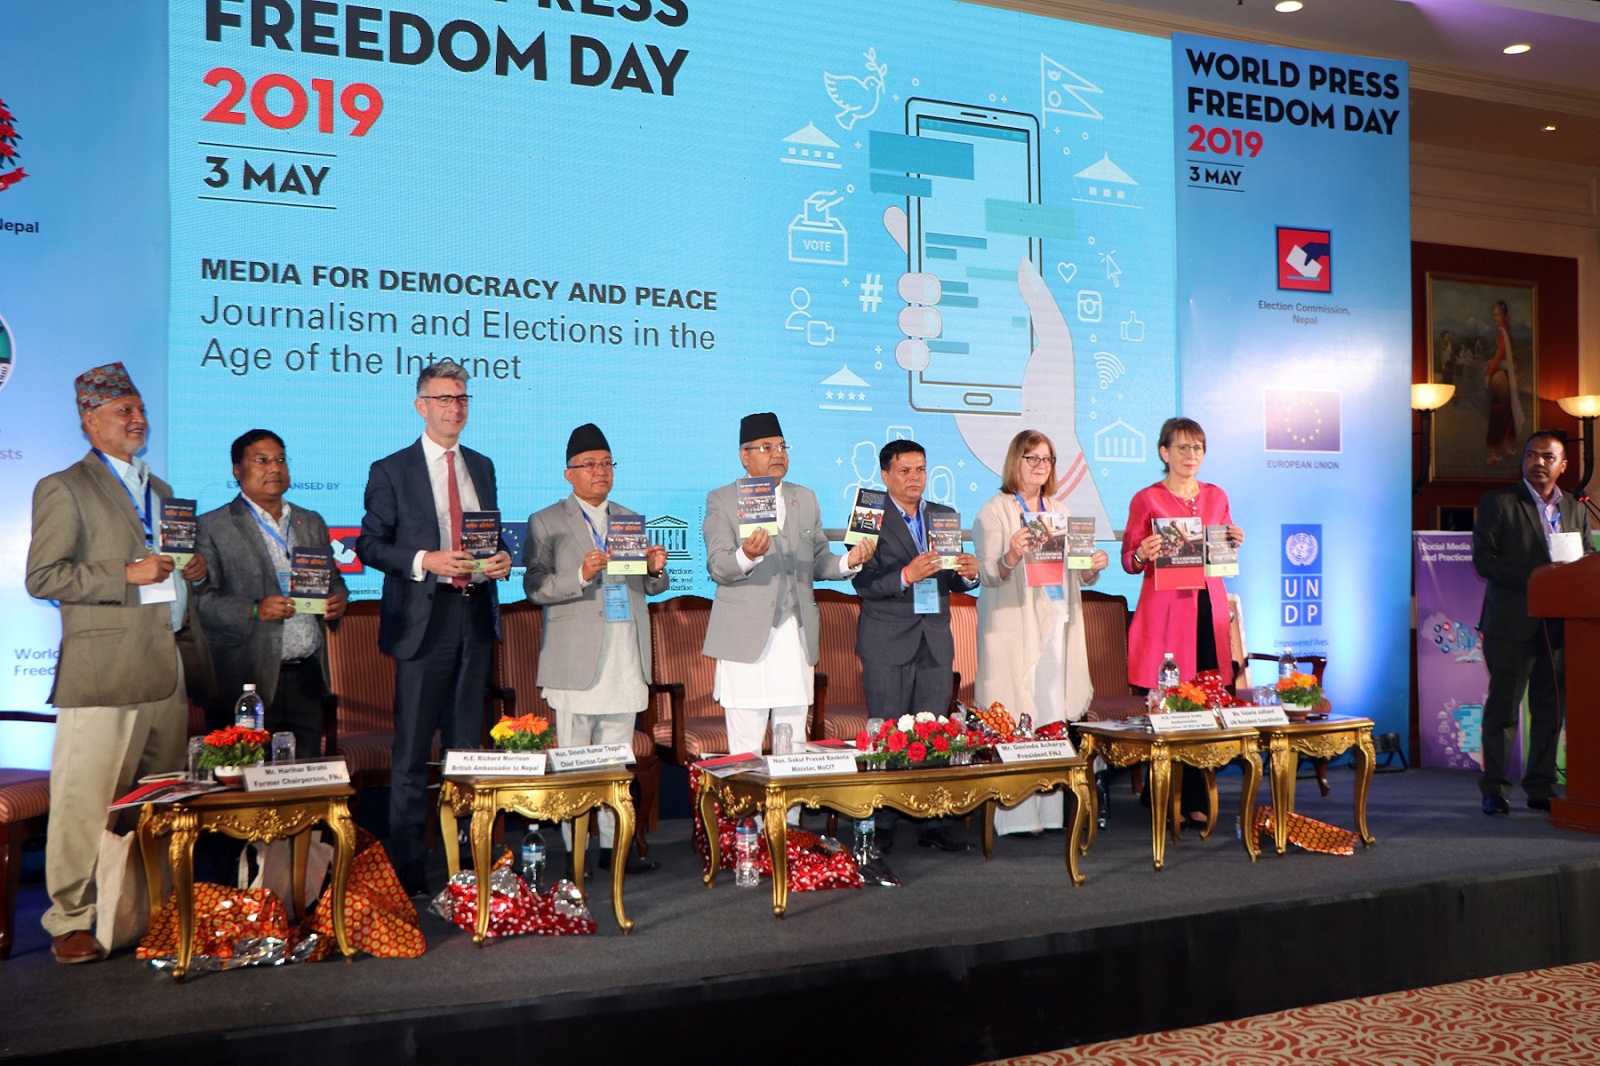 विश्व प्रेस स्वतन्त्रता दिवस (मे ३) का अवसरमा काठमाडौंमा ‘लोकतन्त्र र शान्तिका लागि सञ्चार : इन्टरनेटको युगमा पत्रकारिता र निर्वाचन’ विषयक कार्यक्रम सम्पन्न